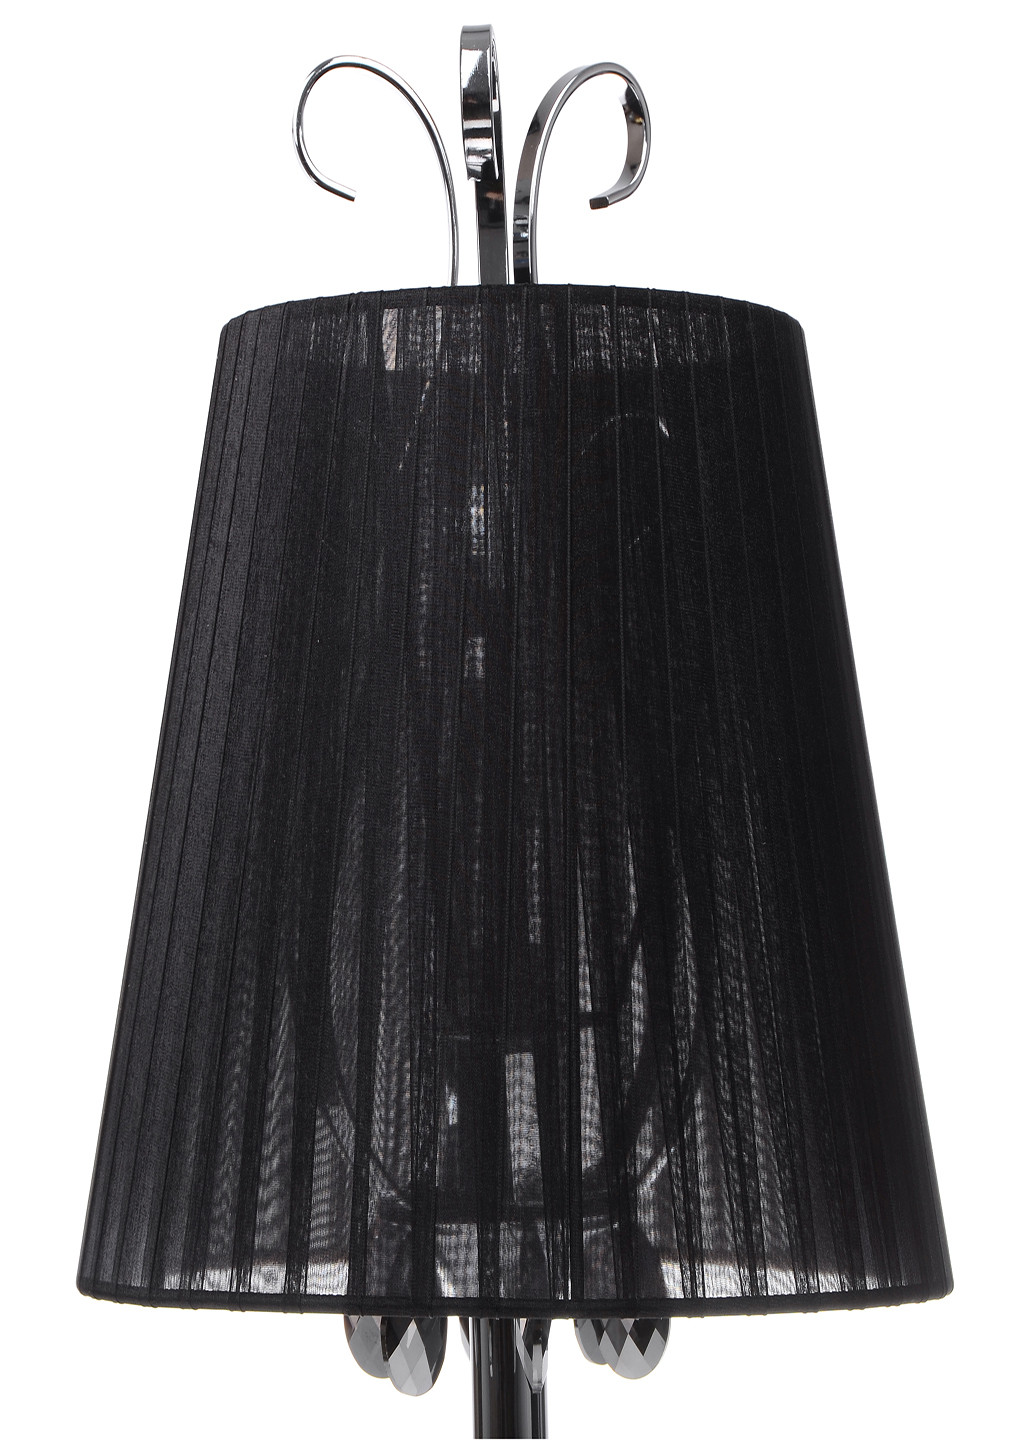 Настольная лампа в современном стиле с абажуром BKL-575T/1 E14 Brille (251314239)